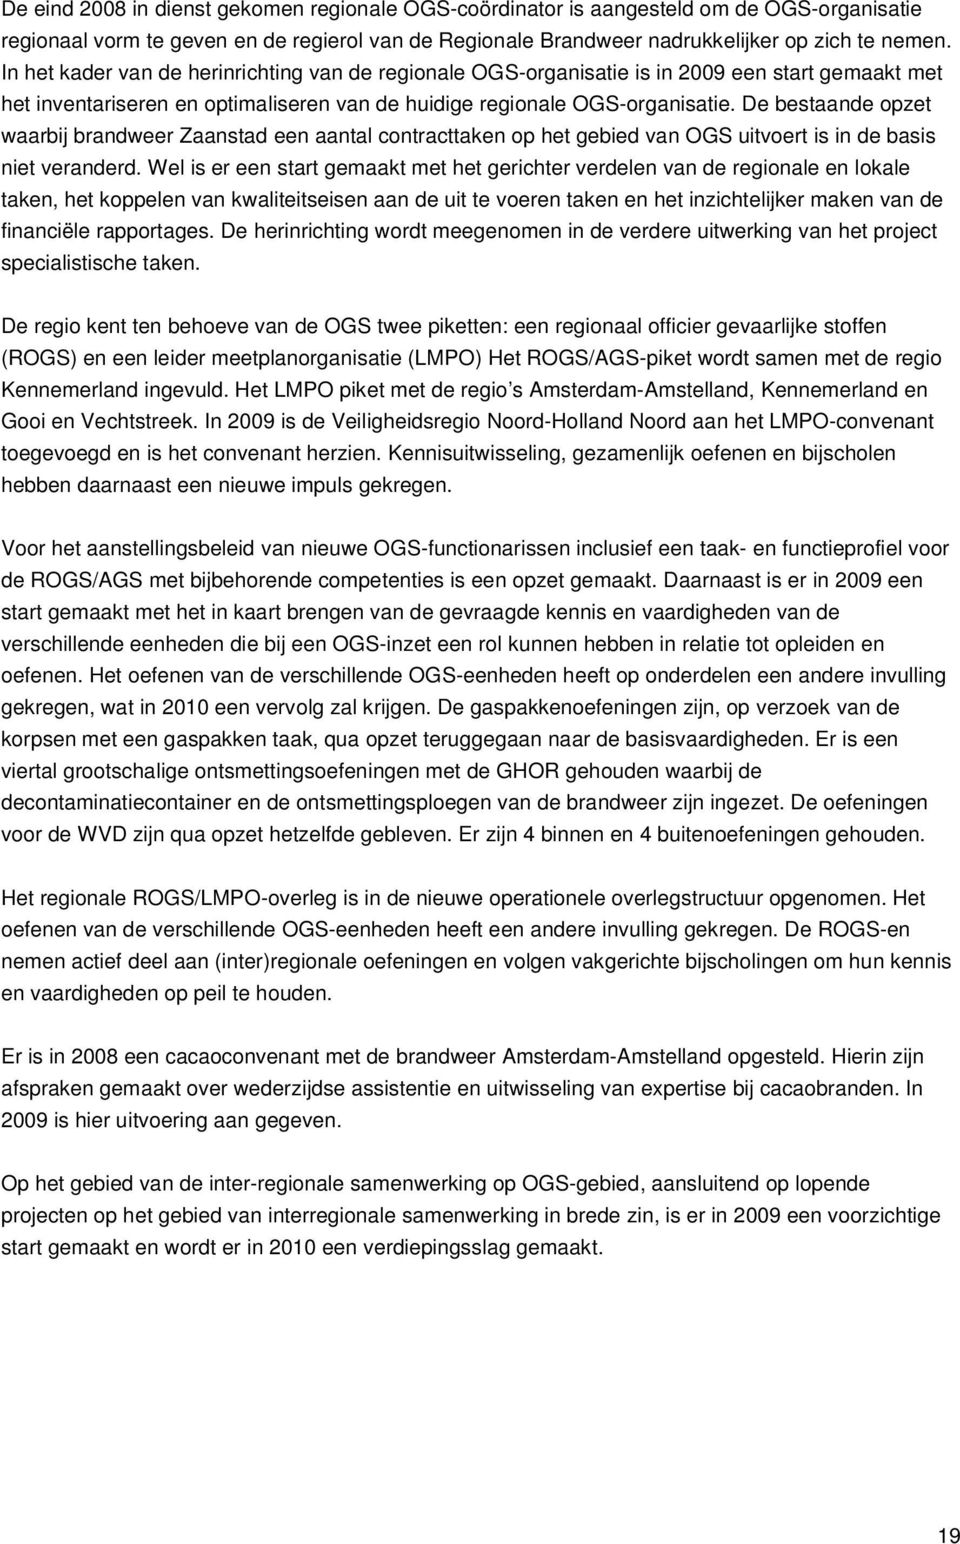 De bestaande opzet waarbij brandweer Zaanstad een aantal contracttaken op het gebied van OGS uitvoert is in de basis niet veranderd.